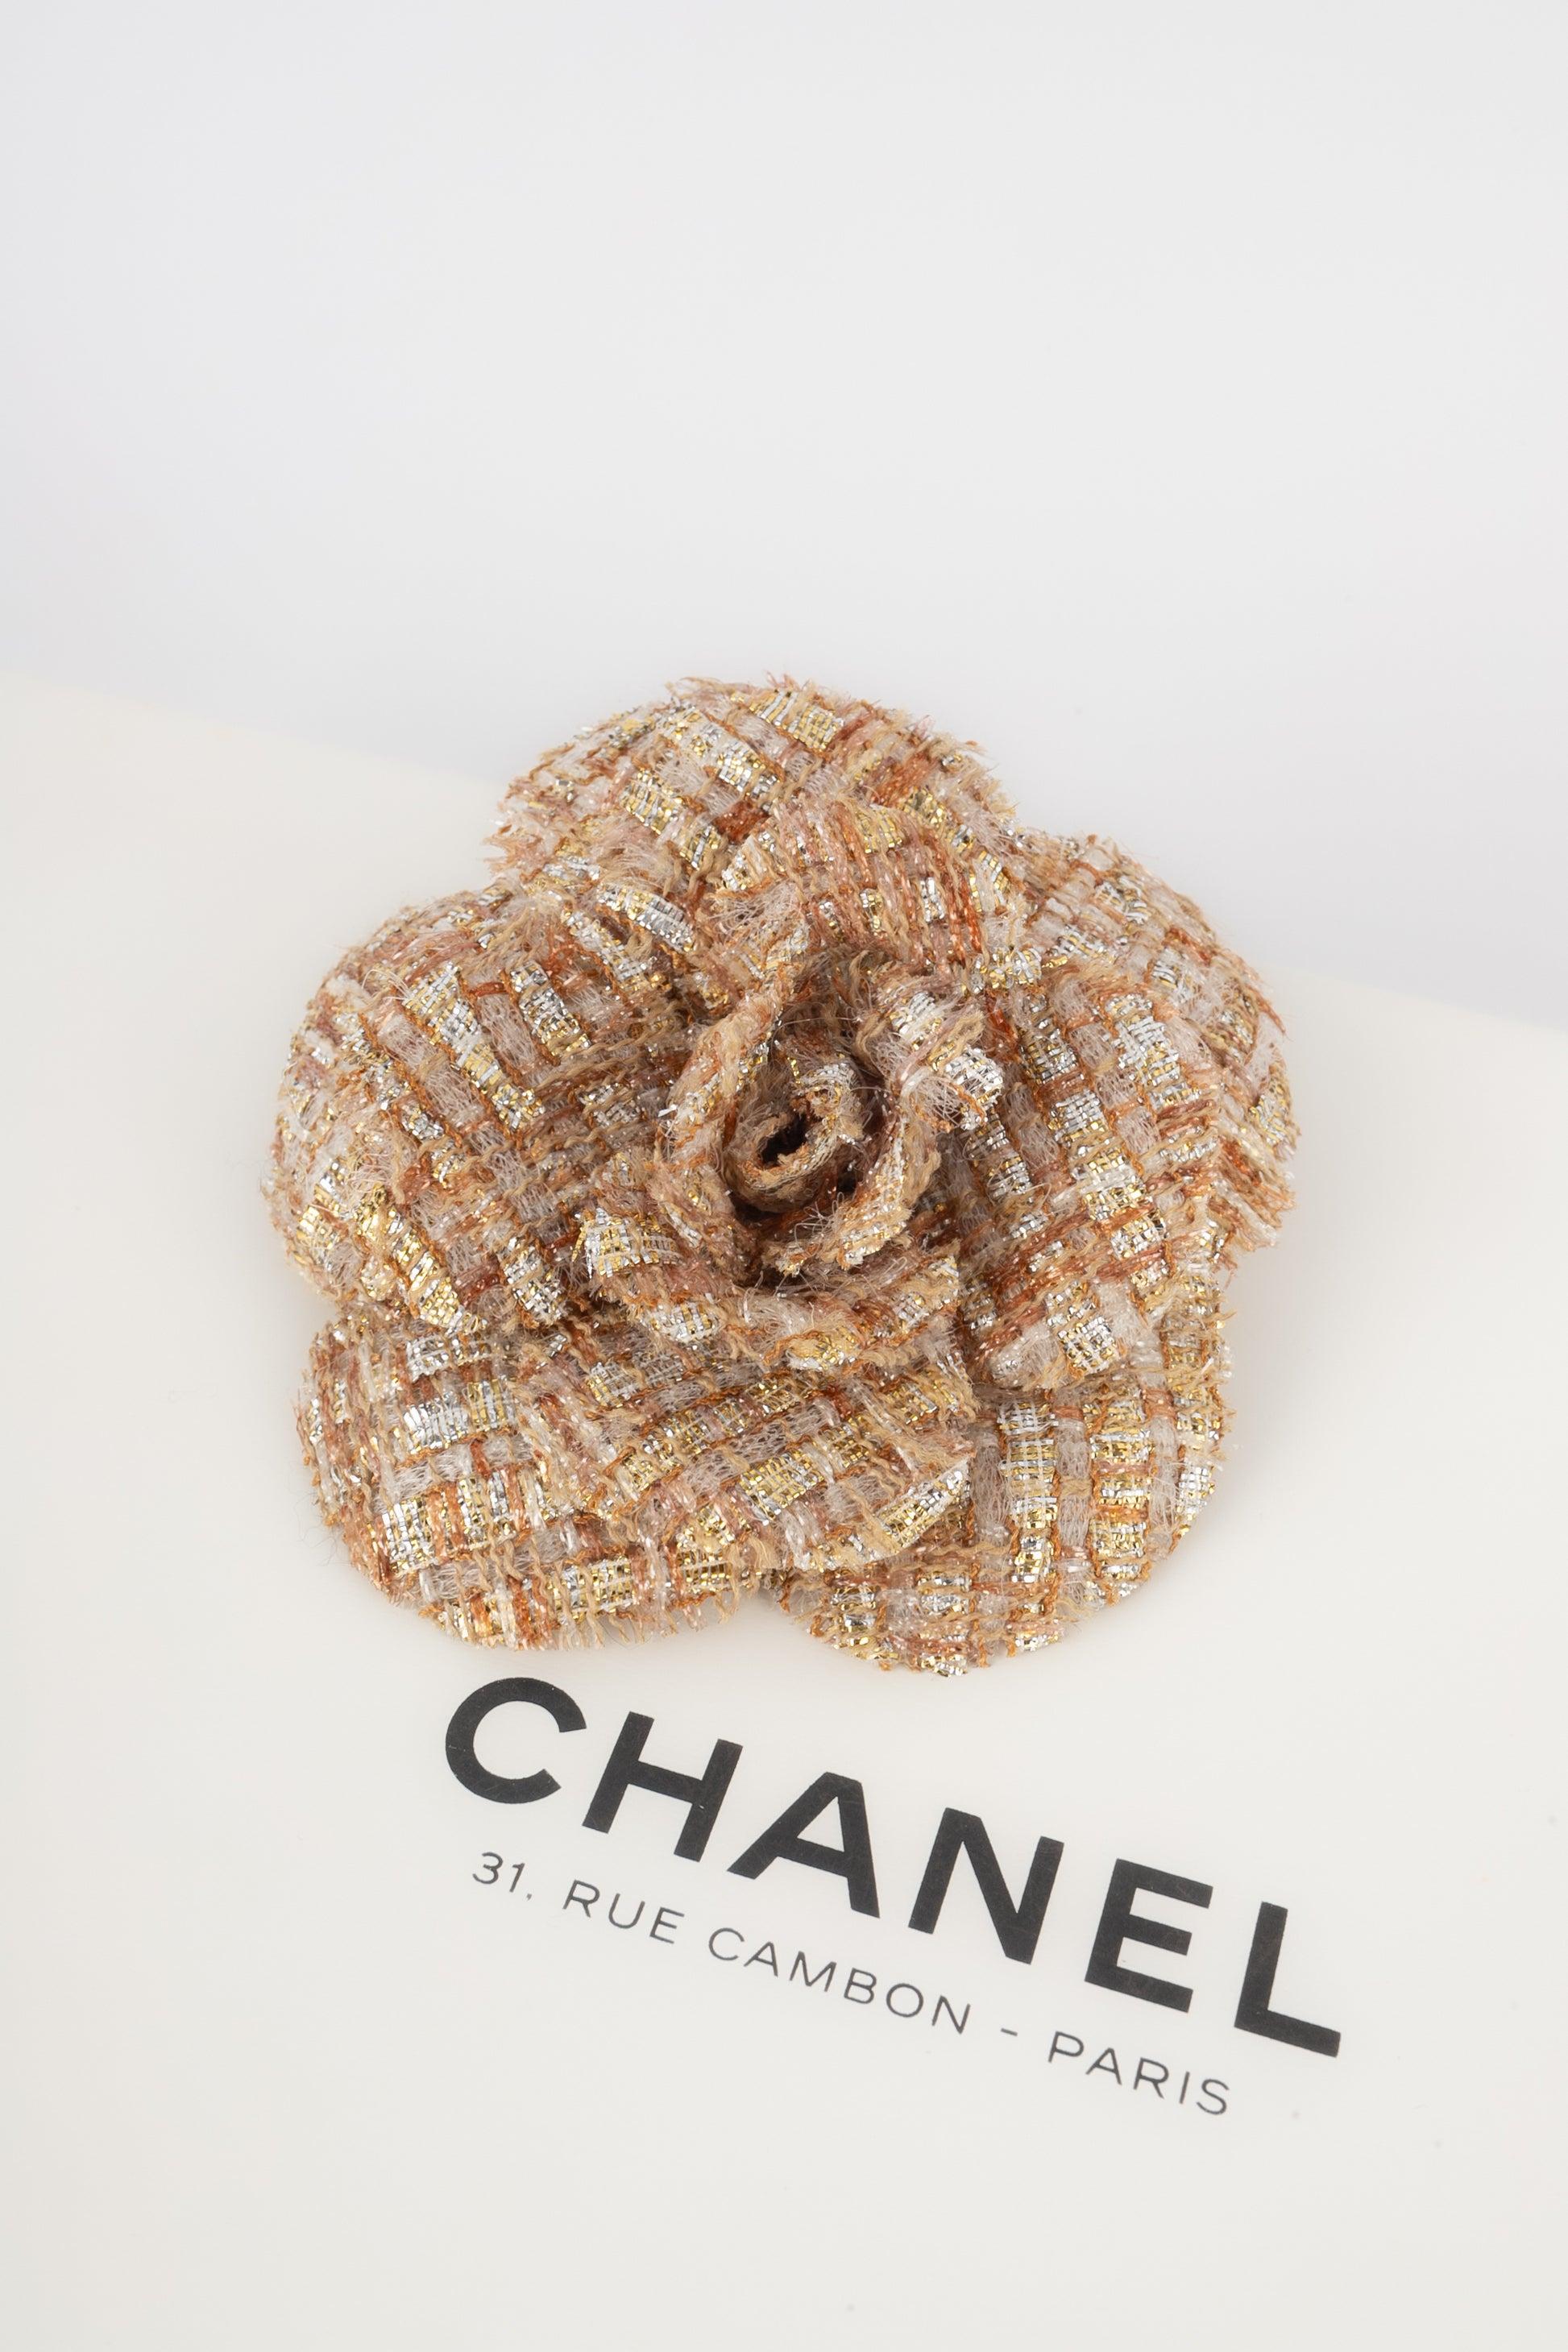 Chanel - (Made in France) Kamelienbrosche aus Tweed.
 
 Zusätzliche Informationen: 
 Zustand: Sehr guter Zustand
 Abmessungen: Höhe: 9 cm
 
 Sellers Referenz: BRB164